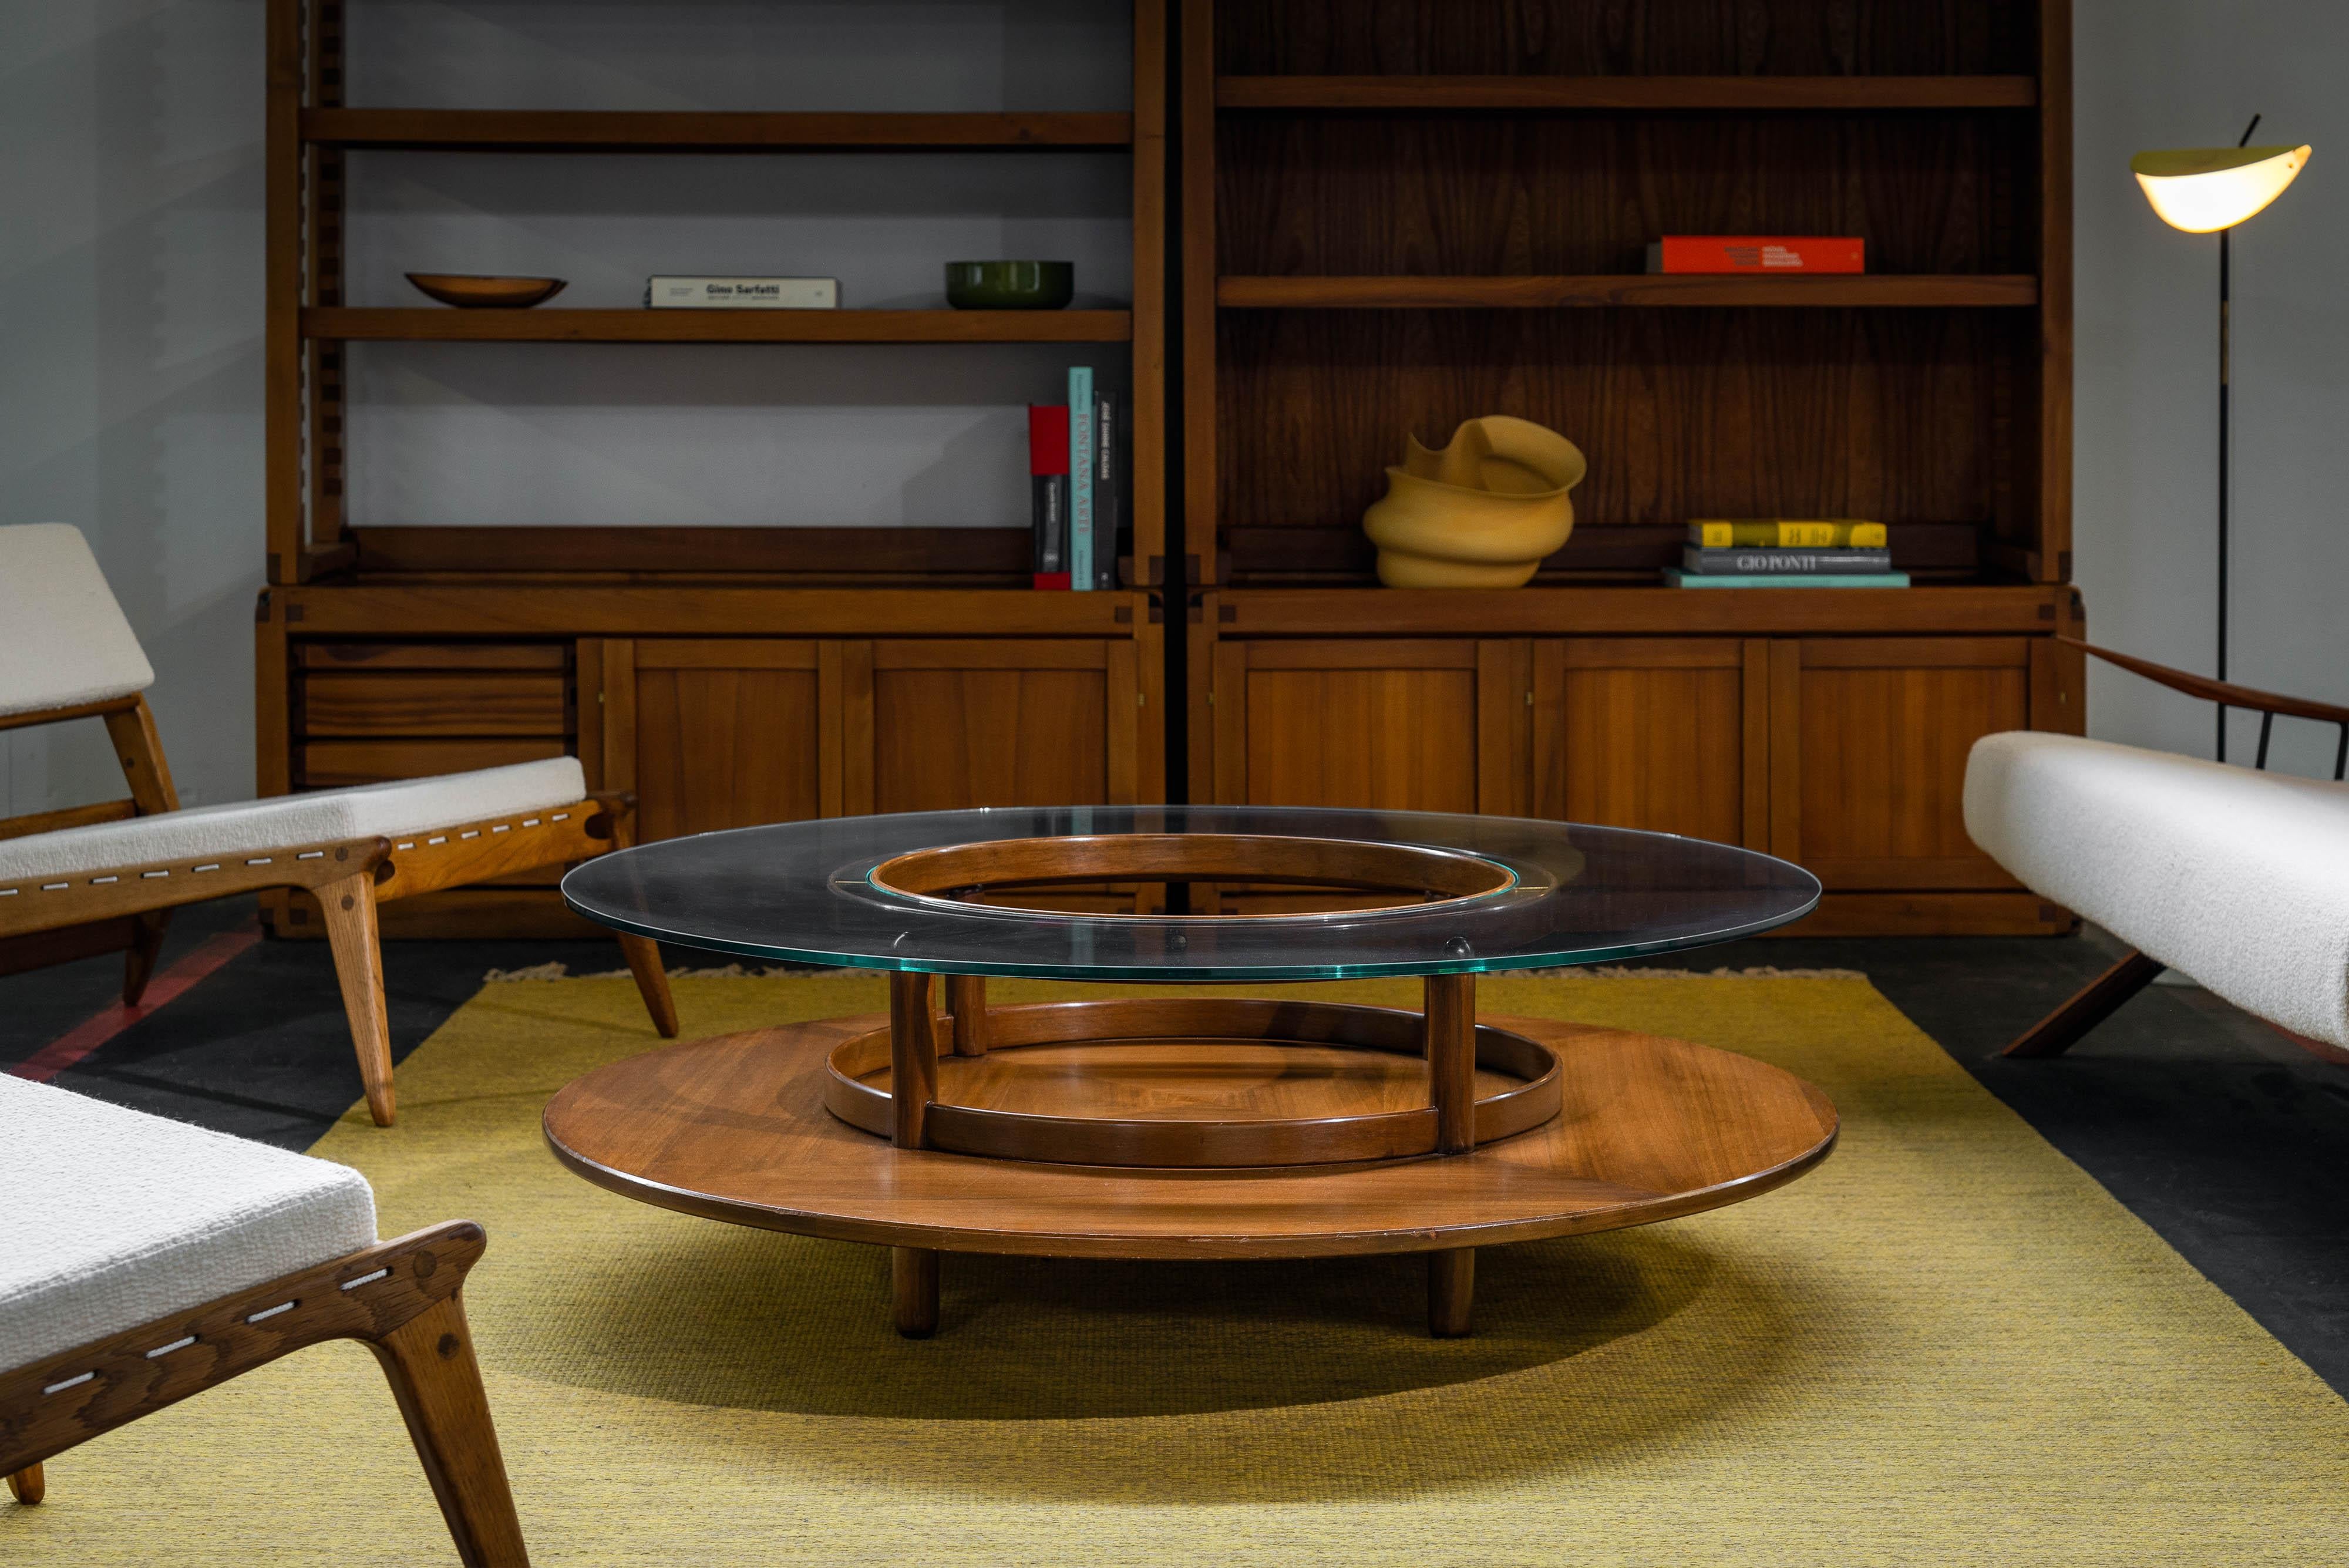 Magnifique table basse conçue par Gianfranco Frattini et fabriquée par Cassina en Italie en 1960. Fabriquée en riche bois de noyer, la table présente une chaleur et un attrait intemporel. L'ajout de détails en laiton raffinés le complète. La table